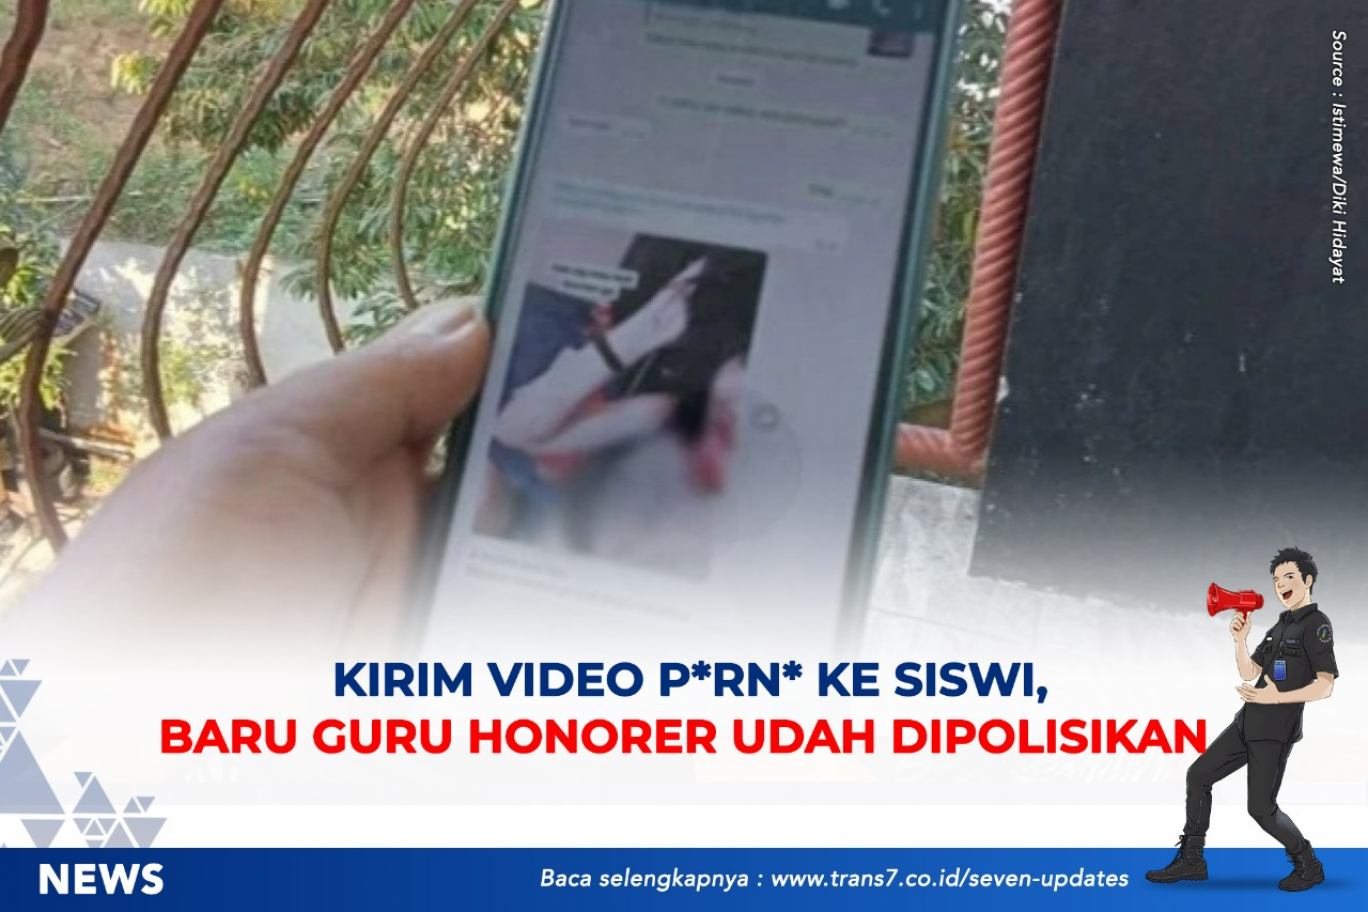 TRANS7 | Kirim Video P*rn* Ke Siswi, Baru Guru Honorer Udah Dipolisikan